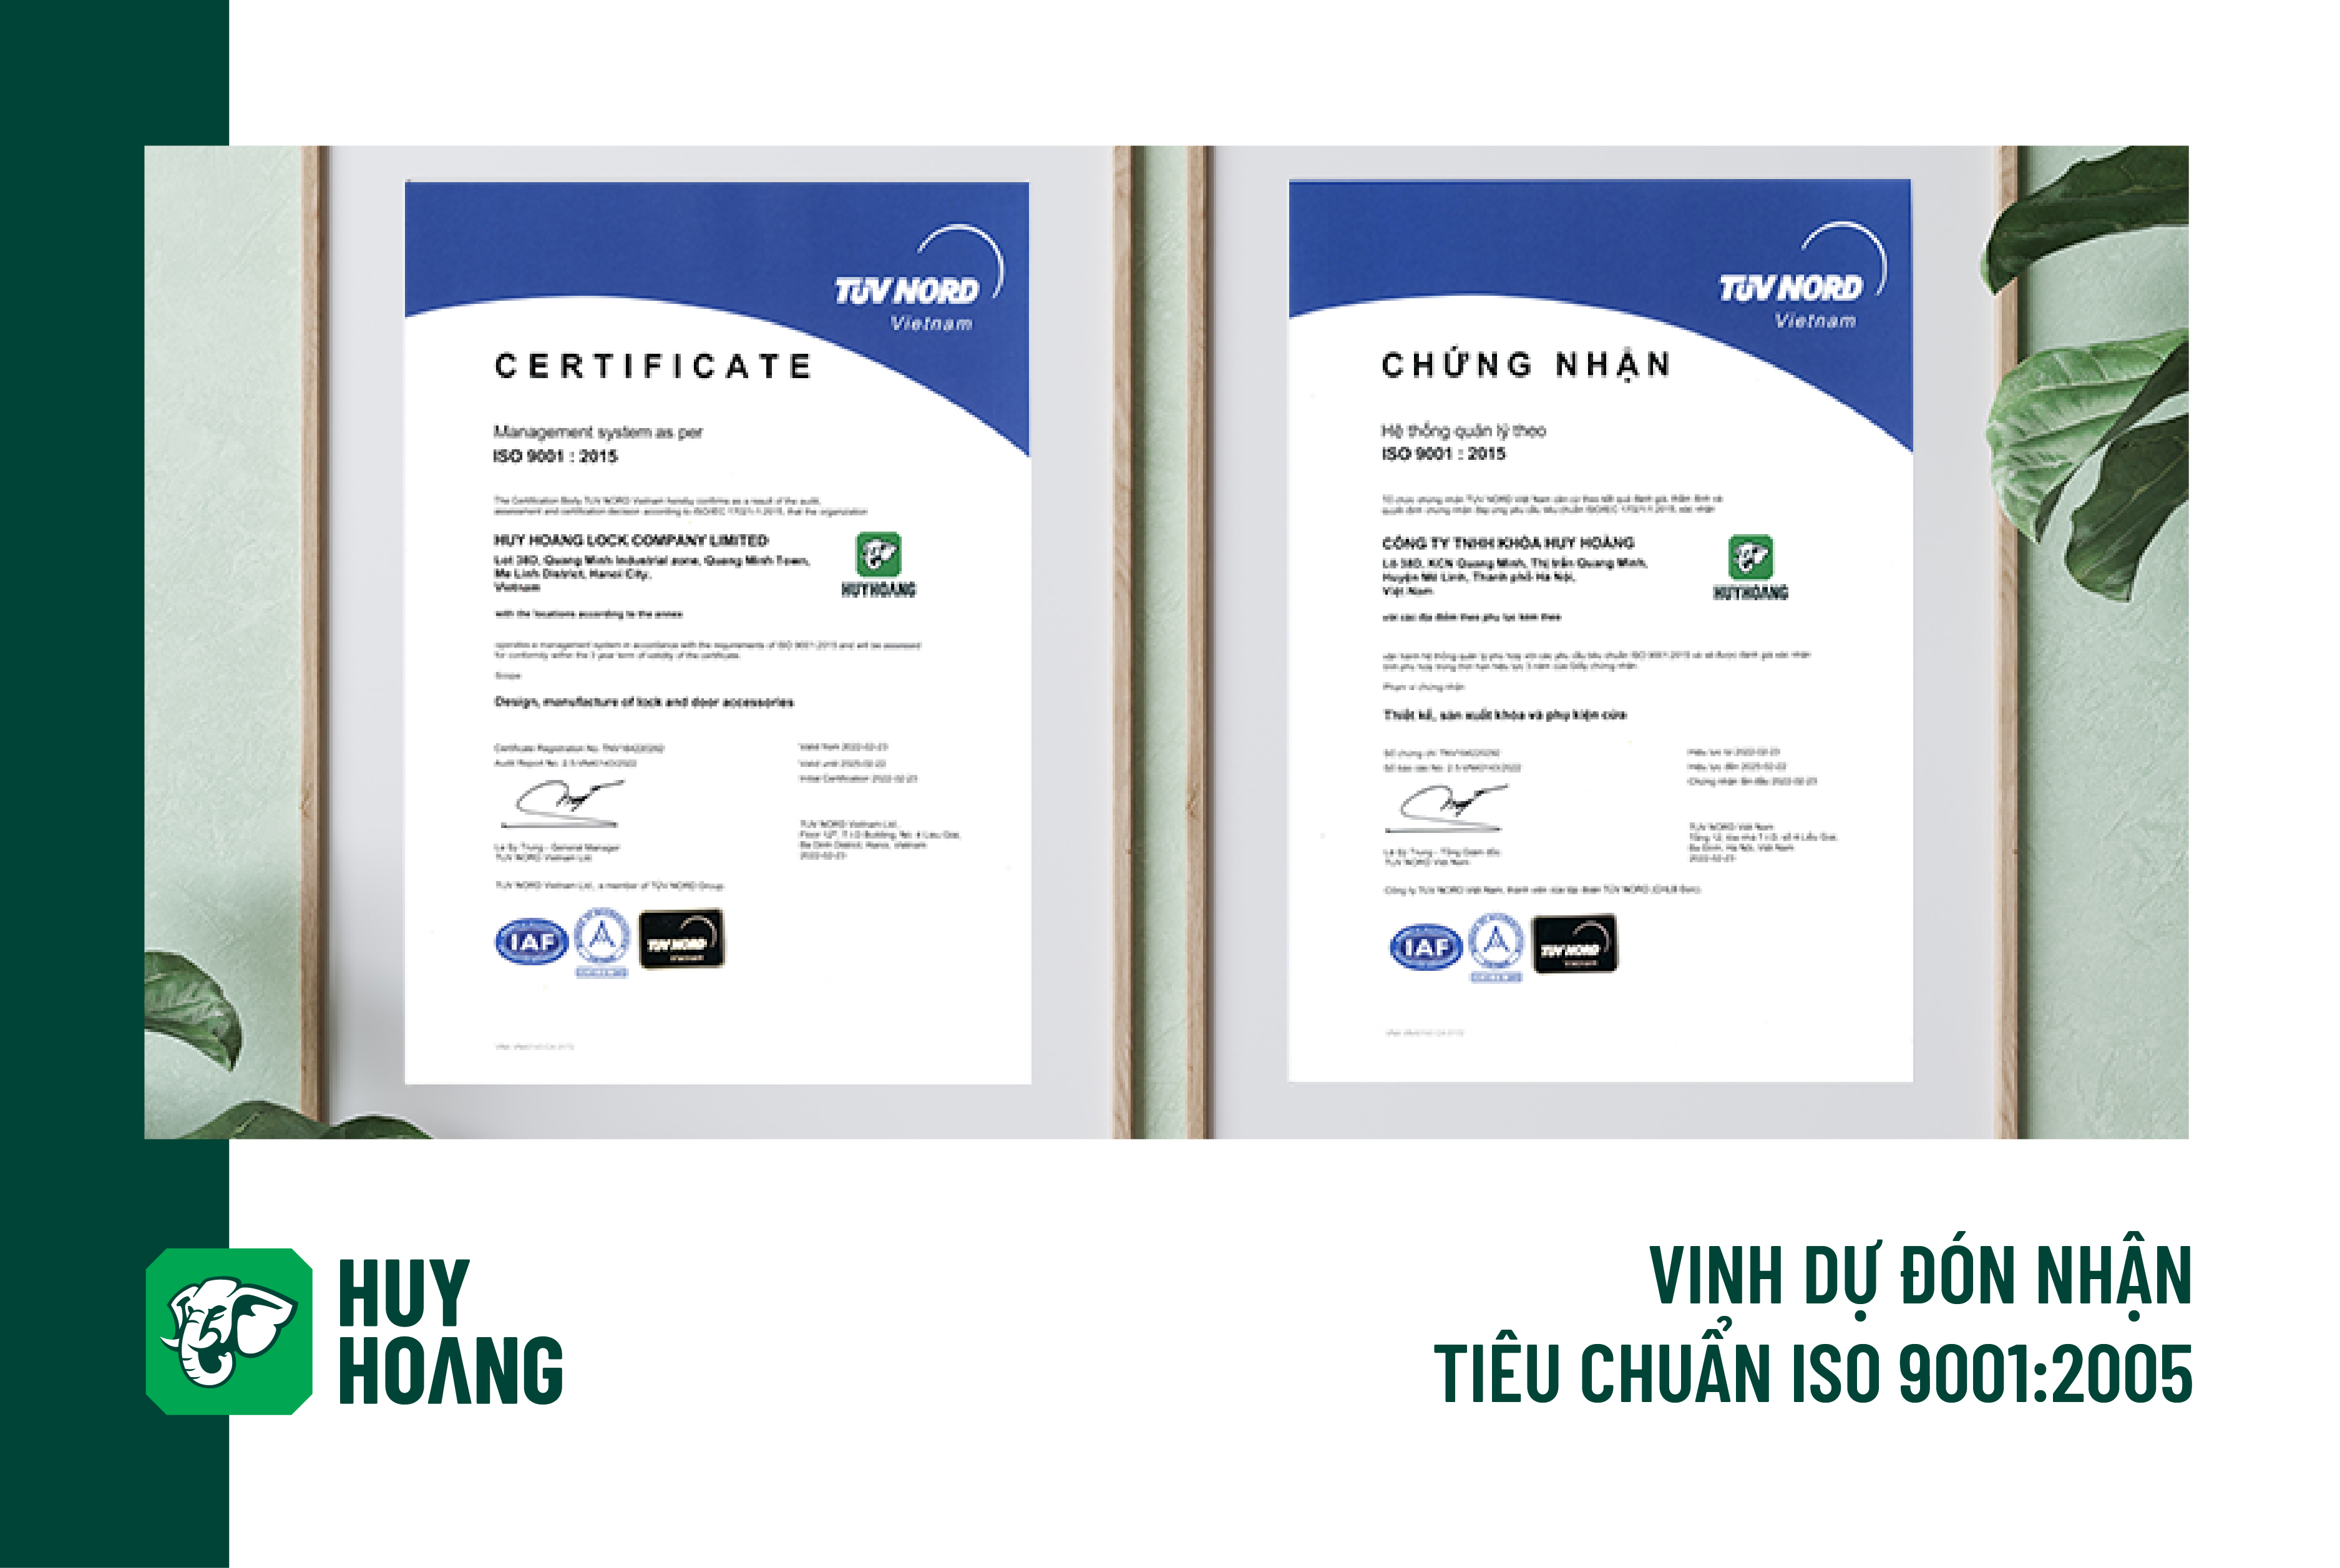 Công ty Khóa Huy Hoàng vinh dự đón nhận chứng nhận iso 9001:2015